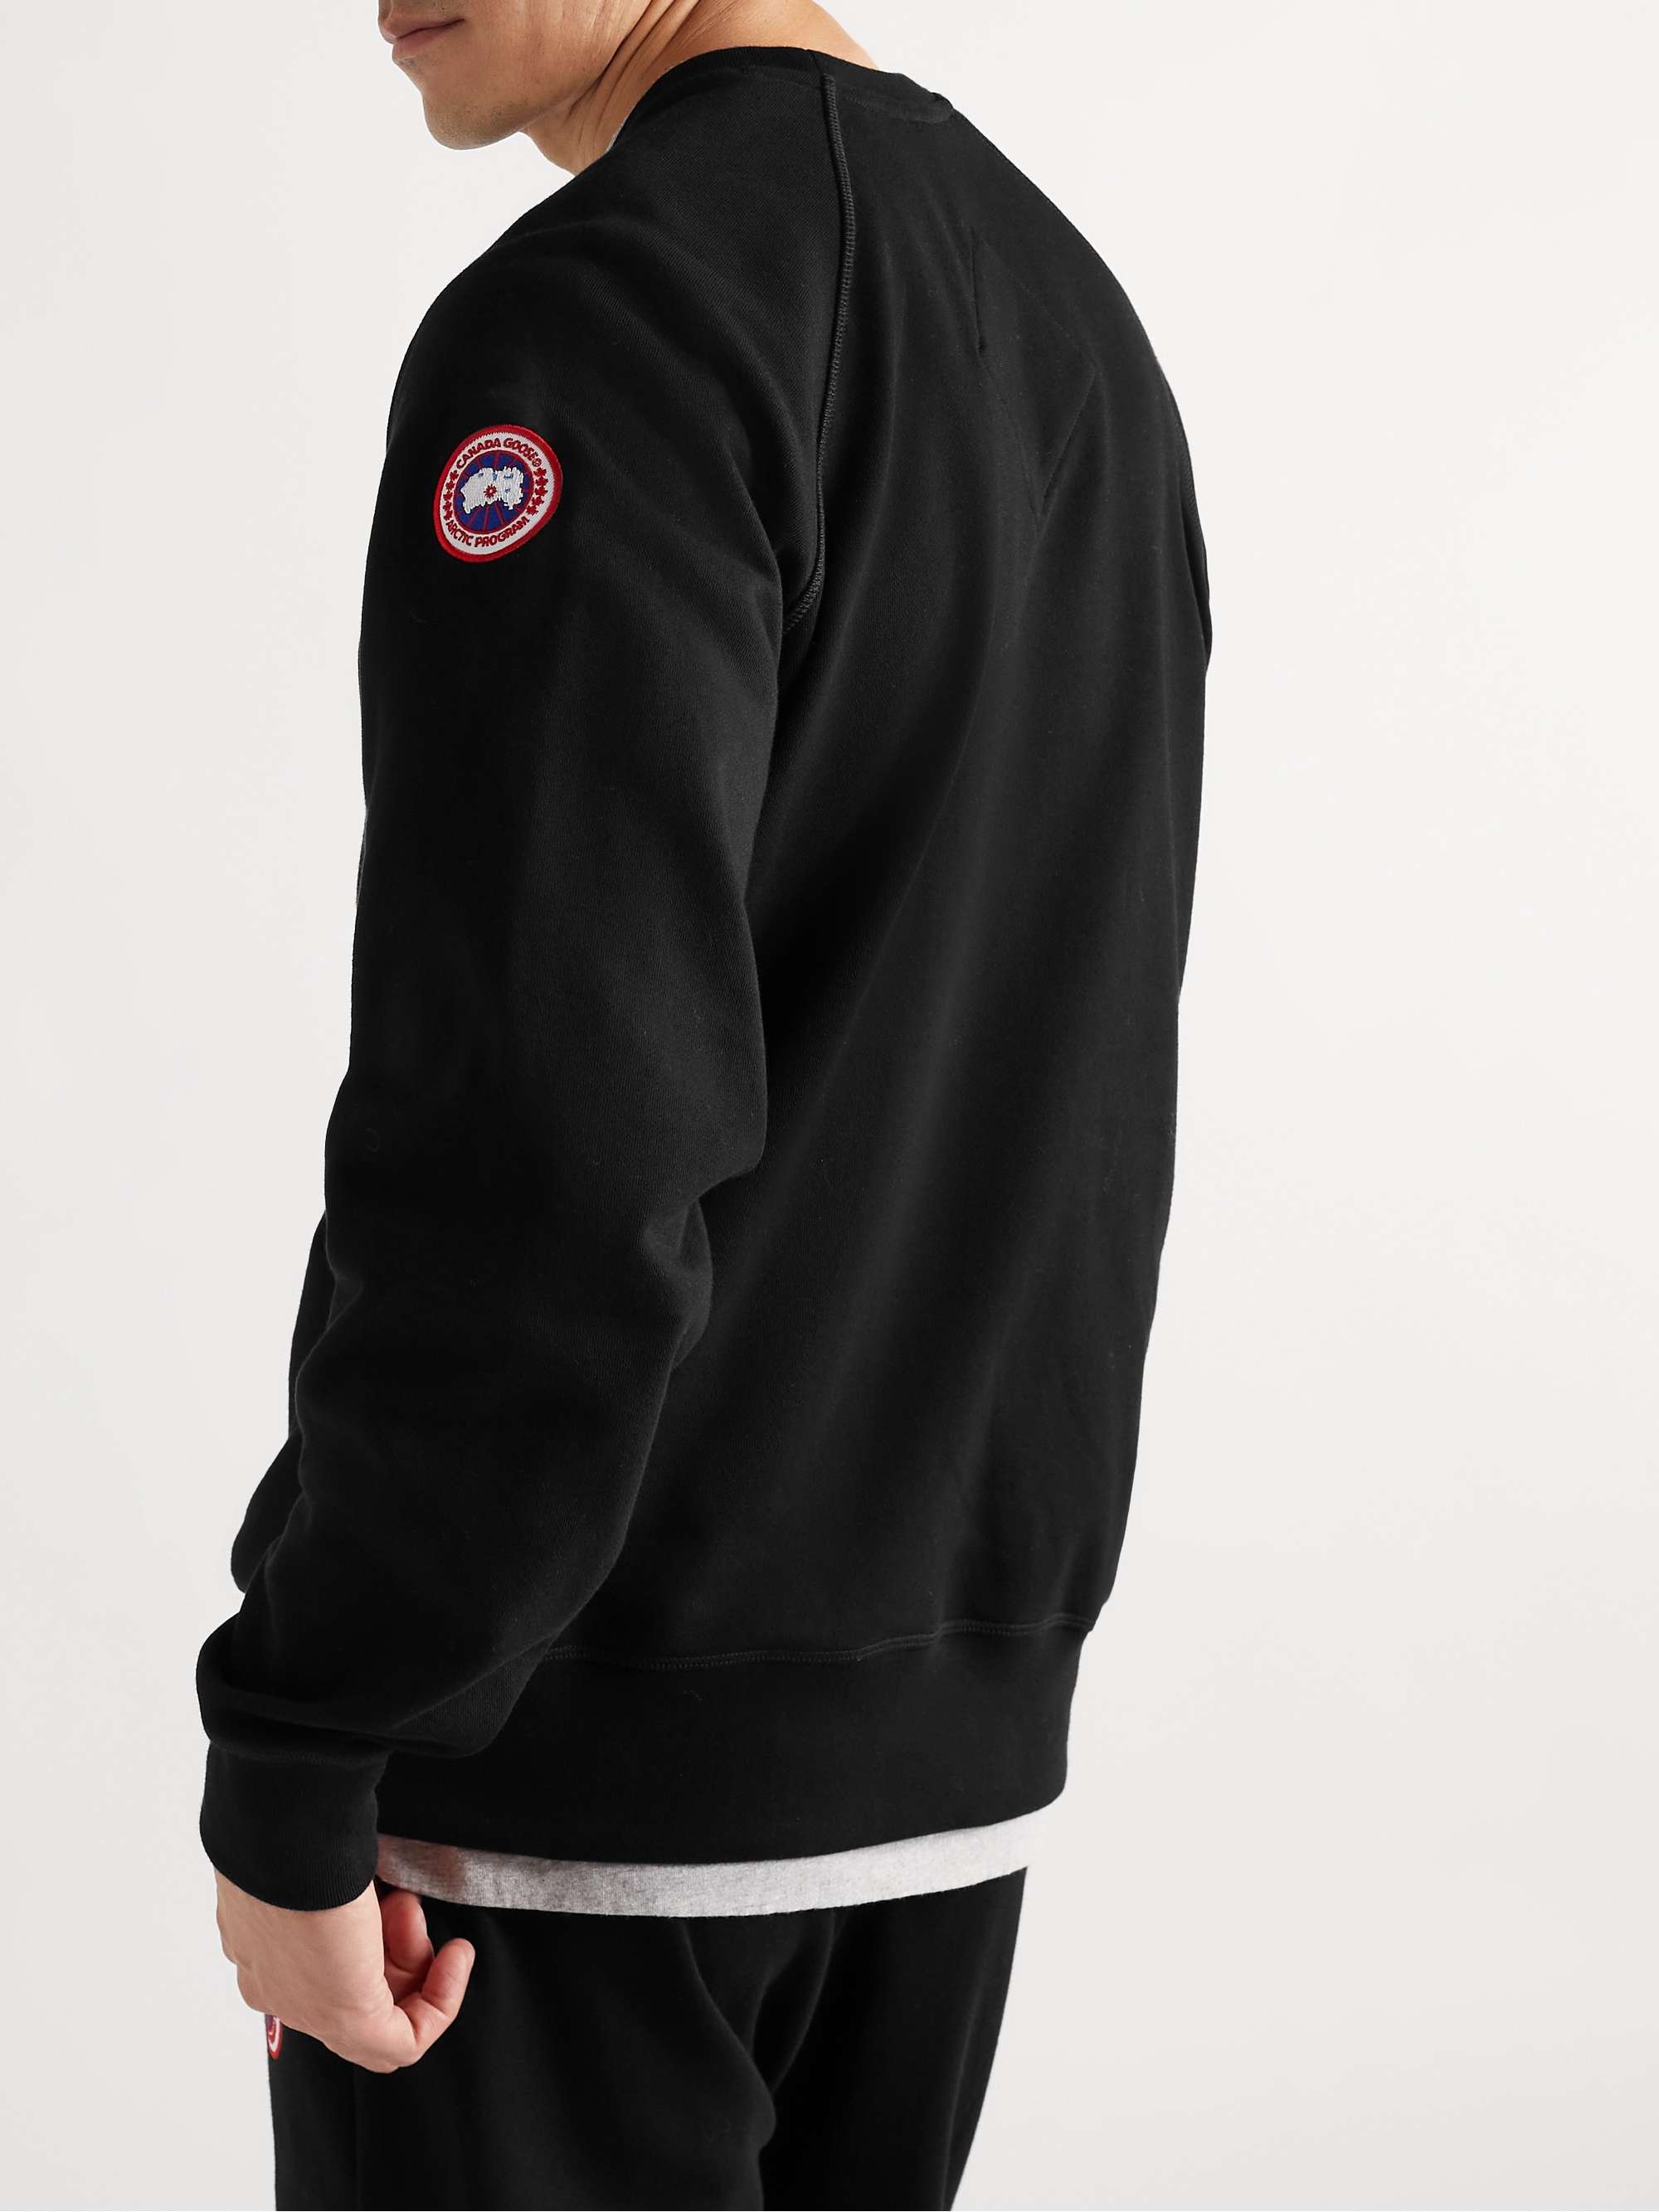 CANADA GOOSE Huron Logo-Appliquéd Cotton-Jersey Sweatshirt